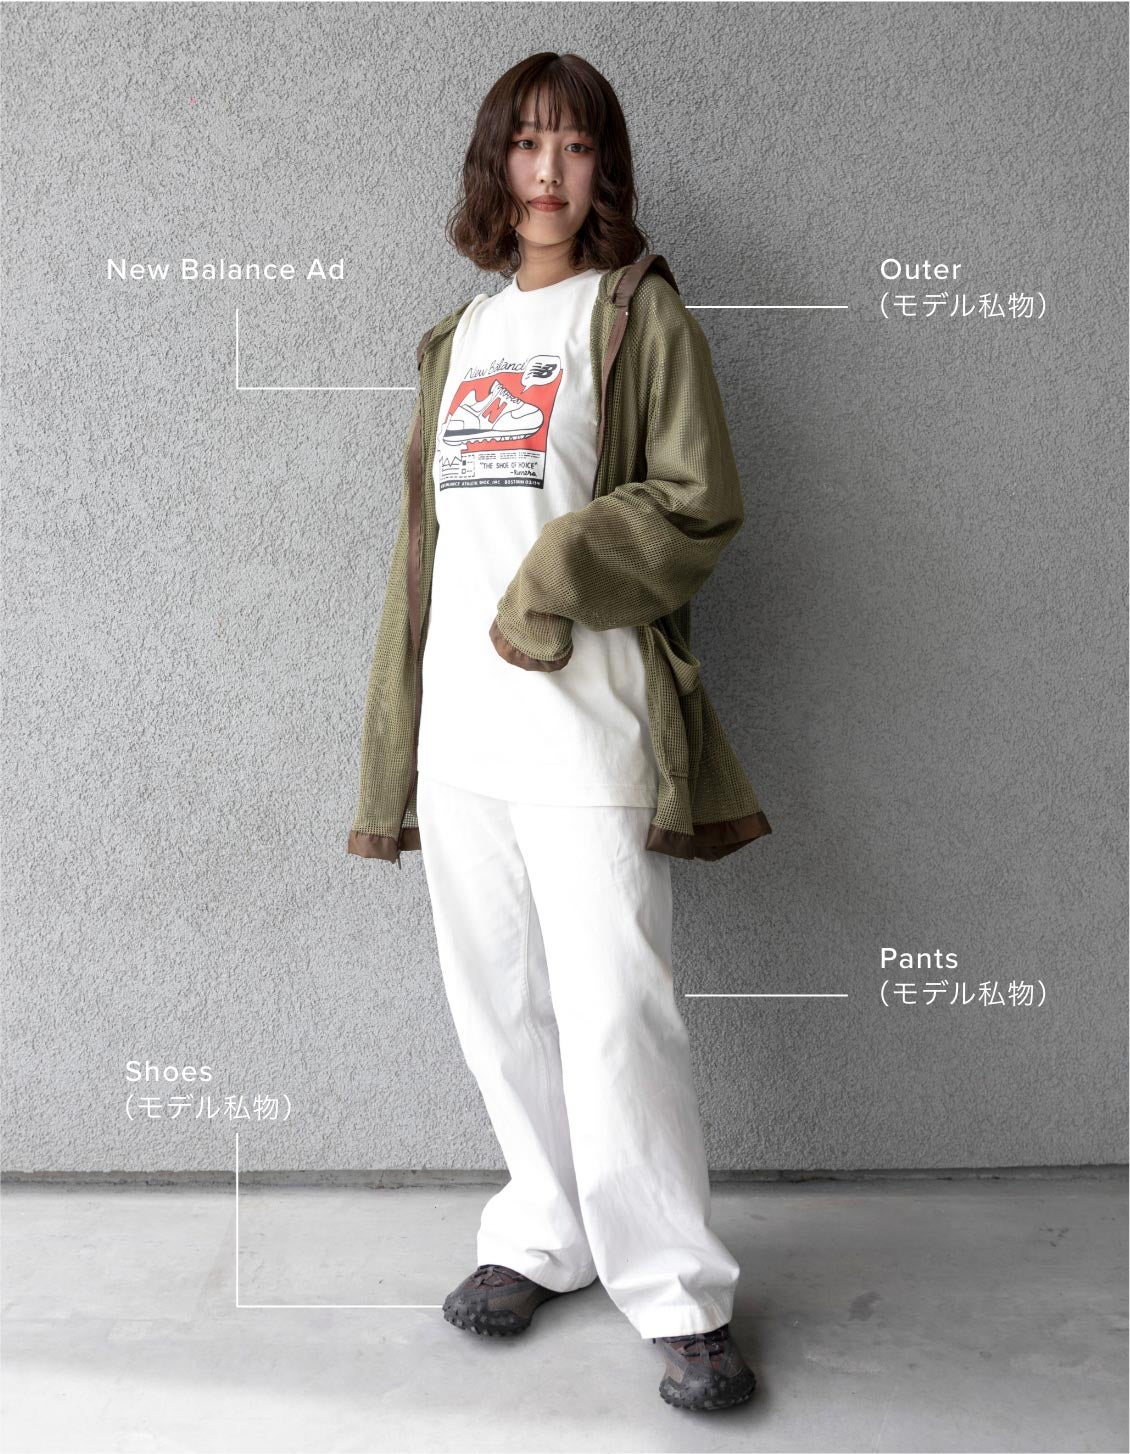 Kinu Natsume搭配详情T恤:New Balance Ad, Outer:模特儿个人物品，Pants:模特儿个人物品，Shoes:模特儿个人物品